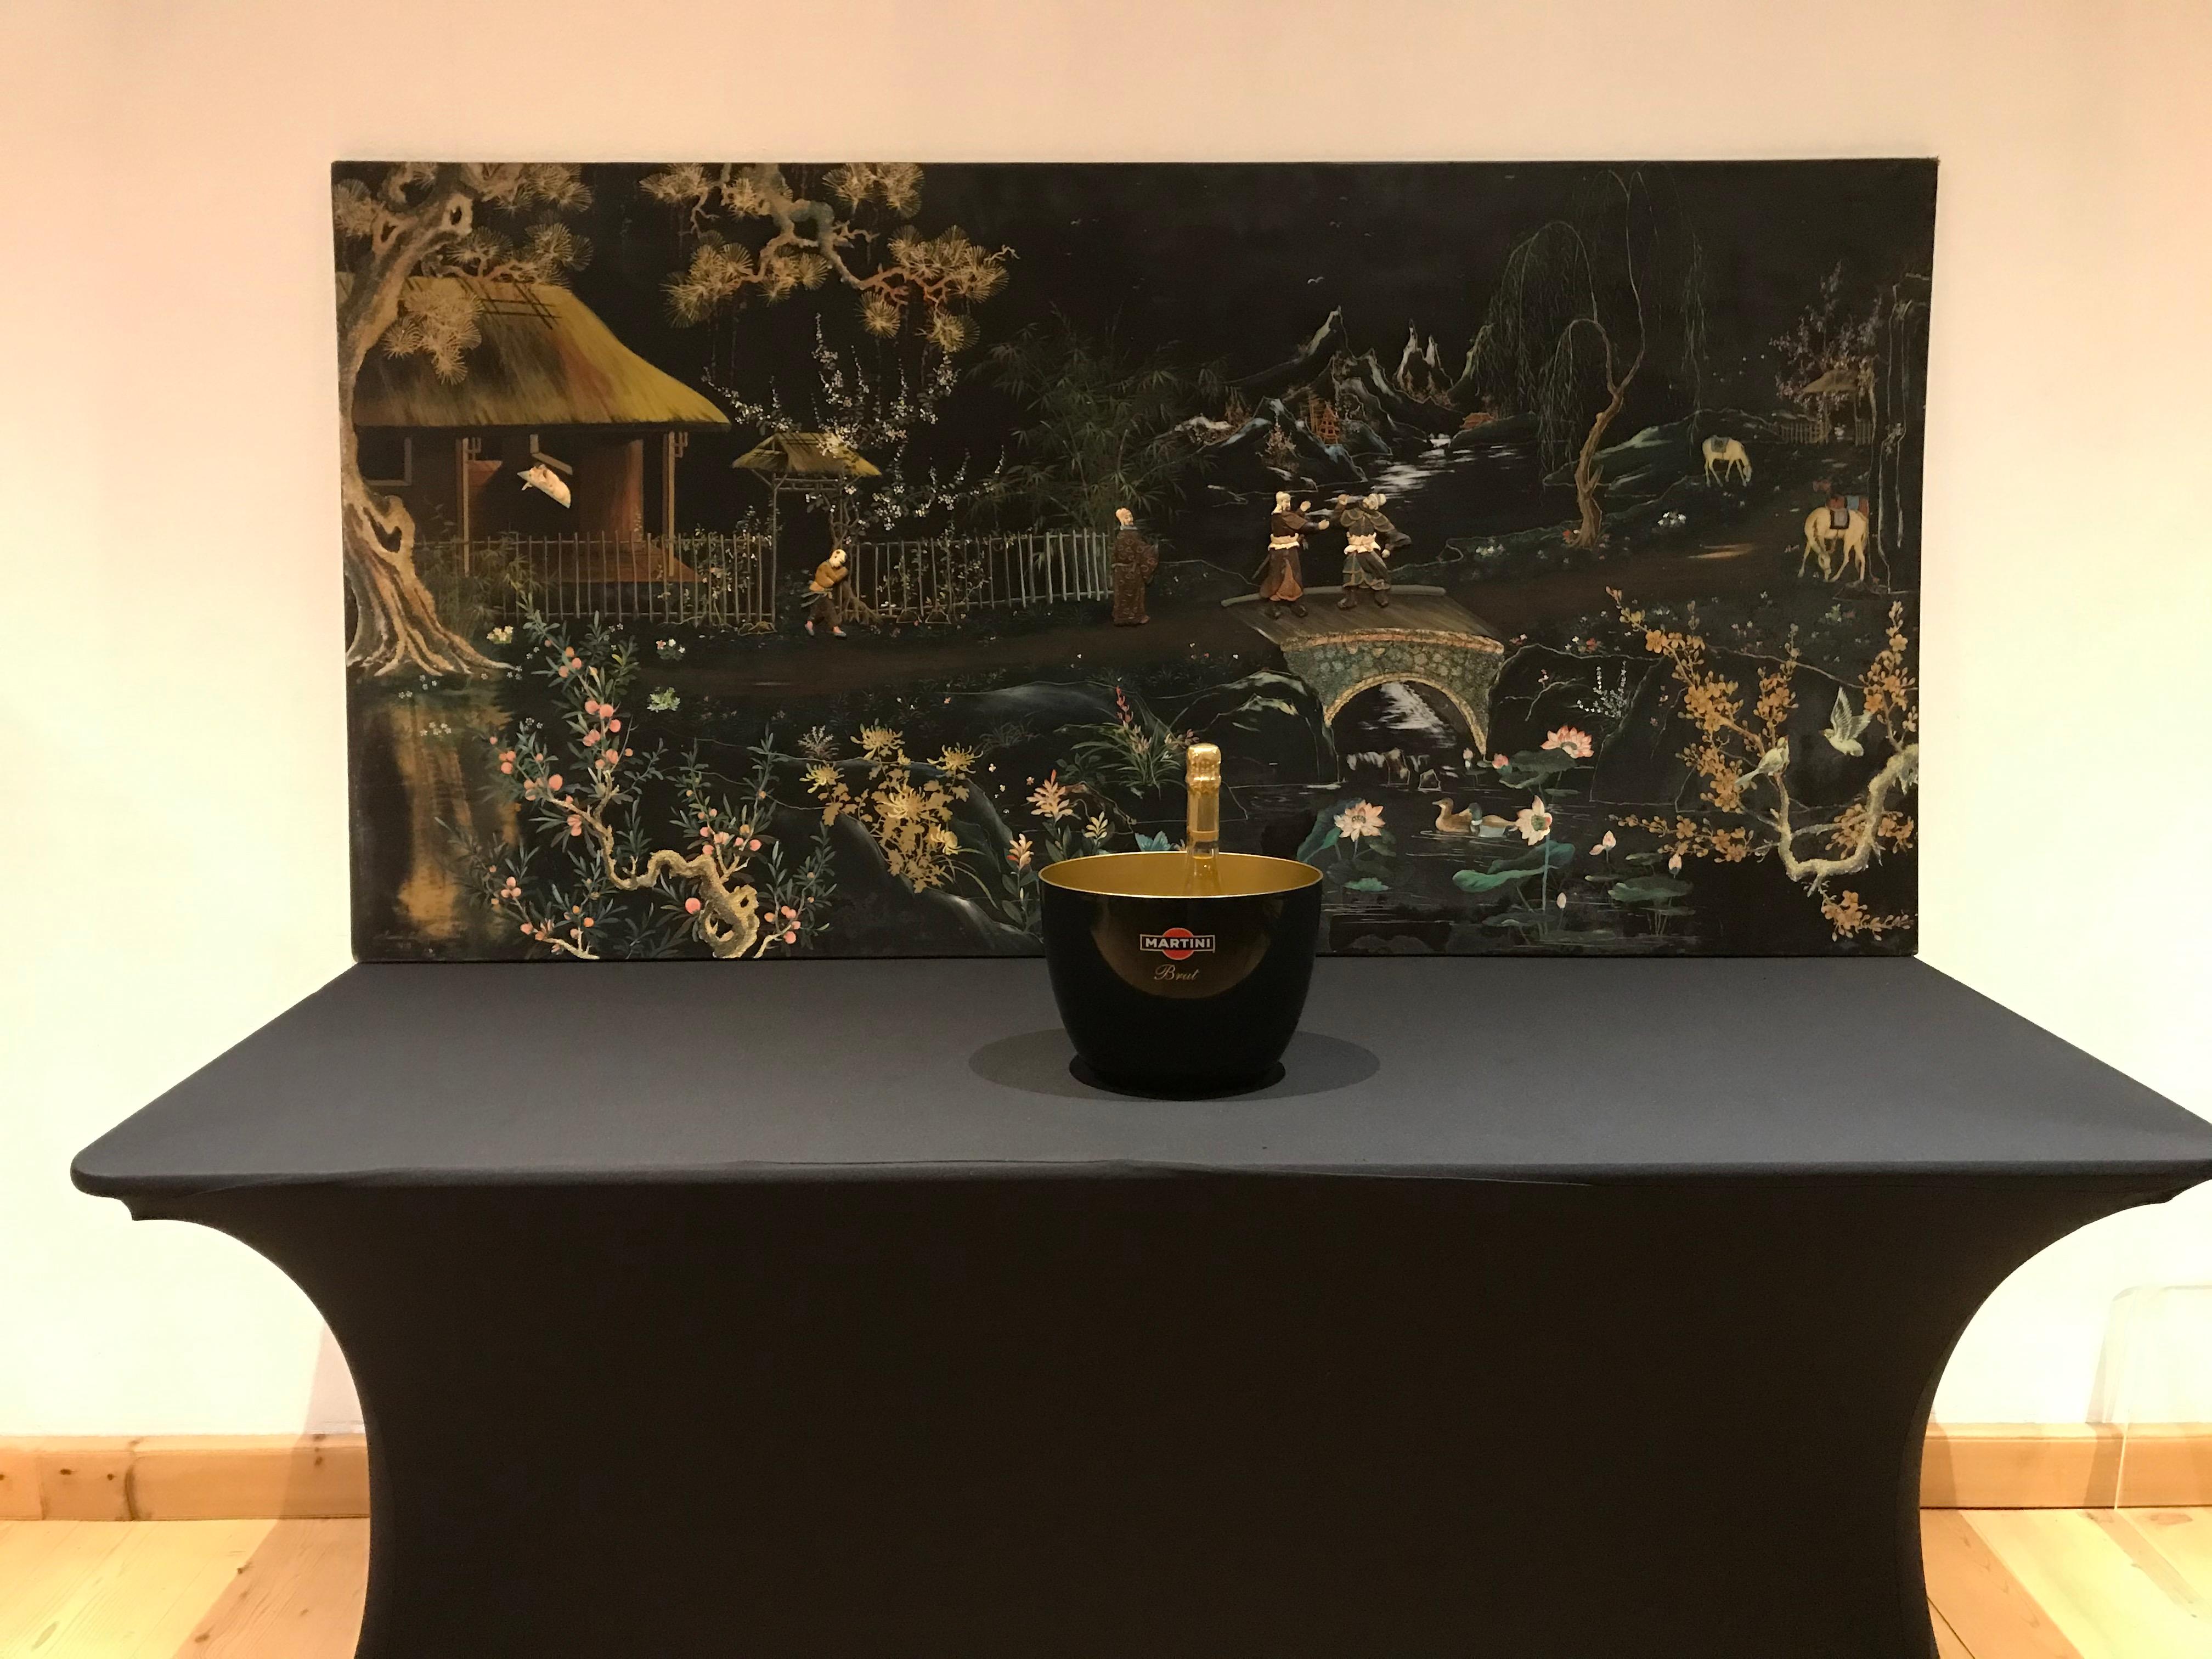 Grand panneau vietnamien en laque noire, circa 1960.
Cette peinture laquée vintage sur toile est montée sur un châssis en bois avec deux crochets en métal pour la suspendre.
Le paysage est sur fond de laque noire. On y voit de belles fleurs, des